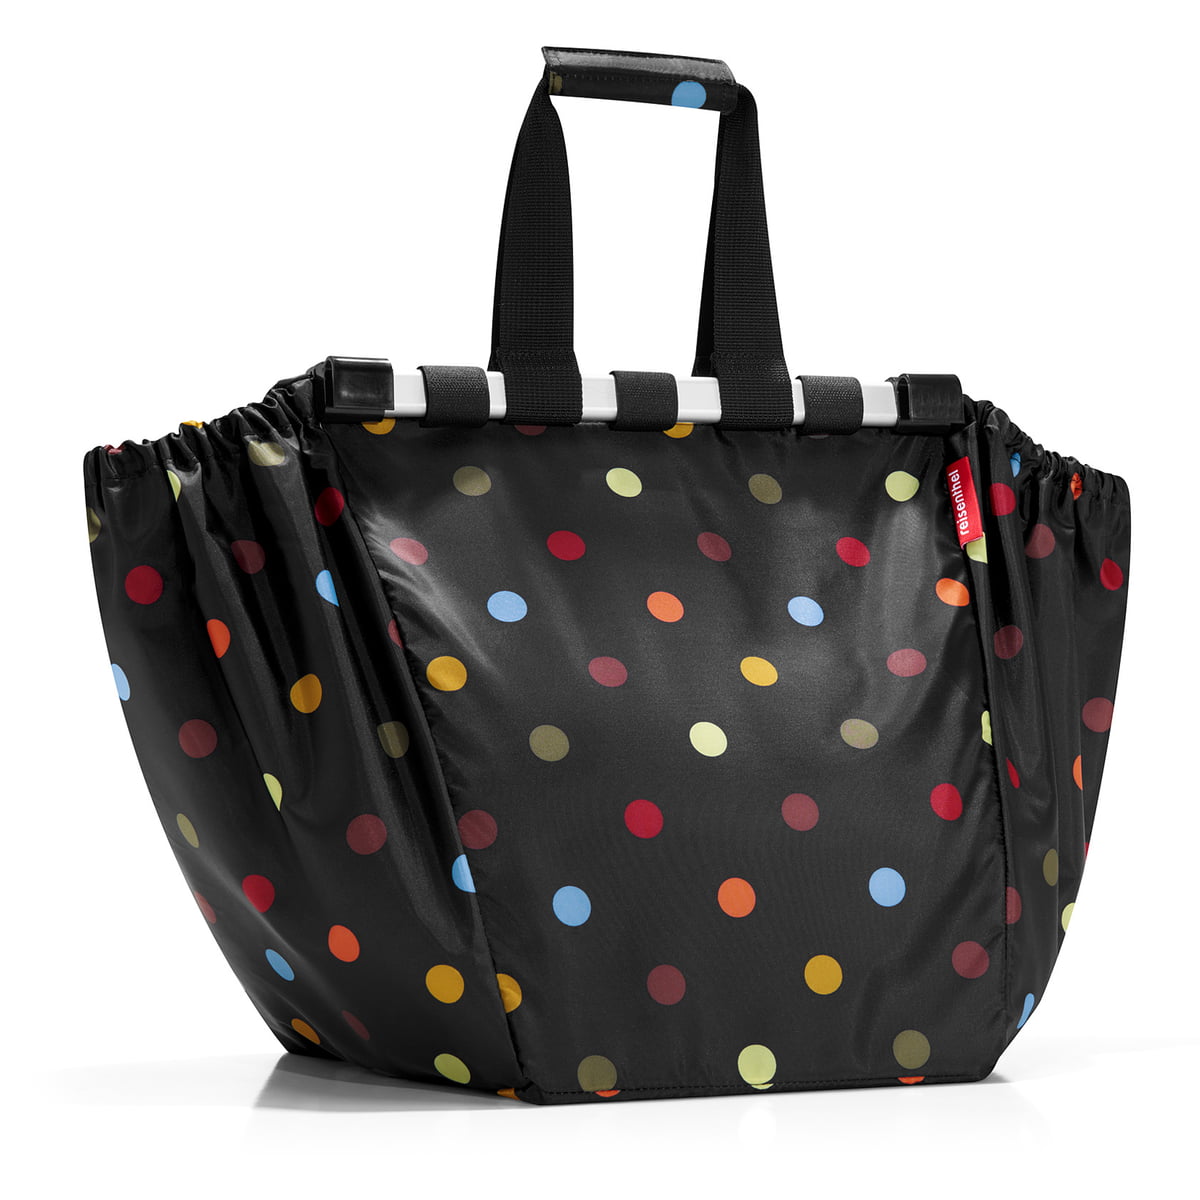 Kate Spade Light Gray Bag. Red Polka Dot Inside - W/ Soft Bag